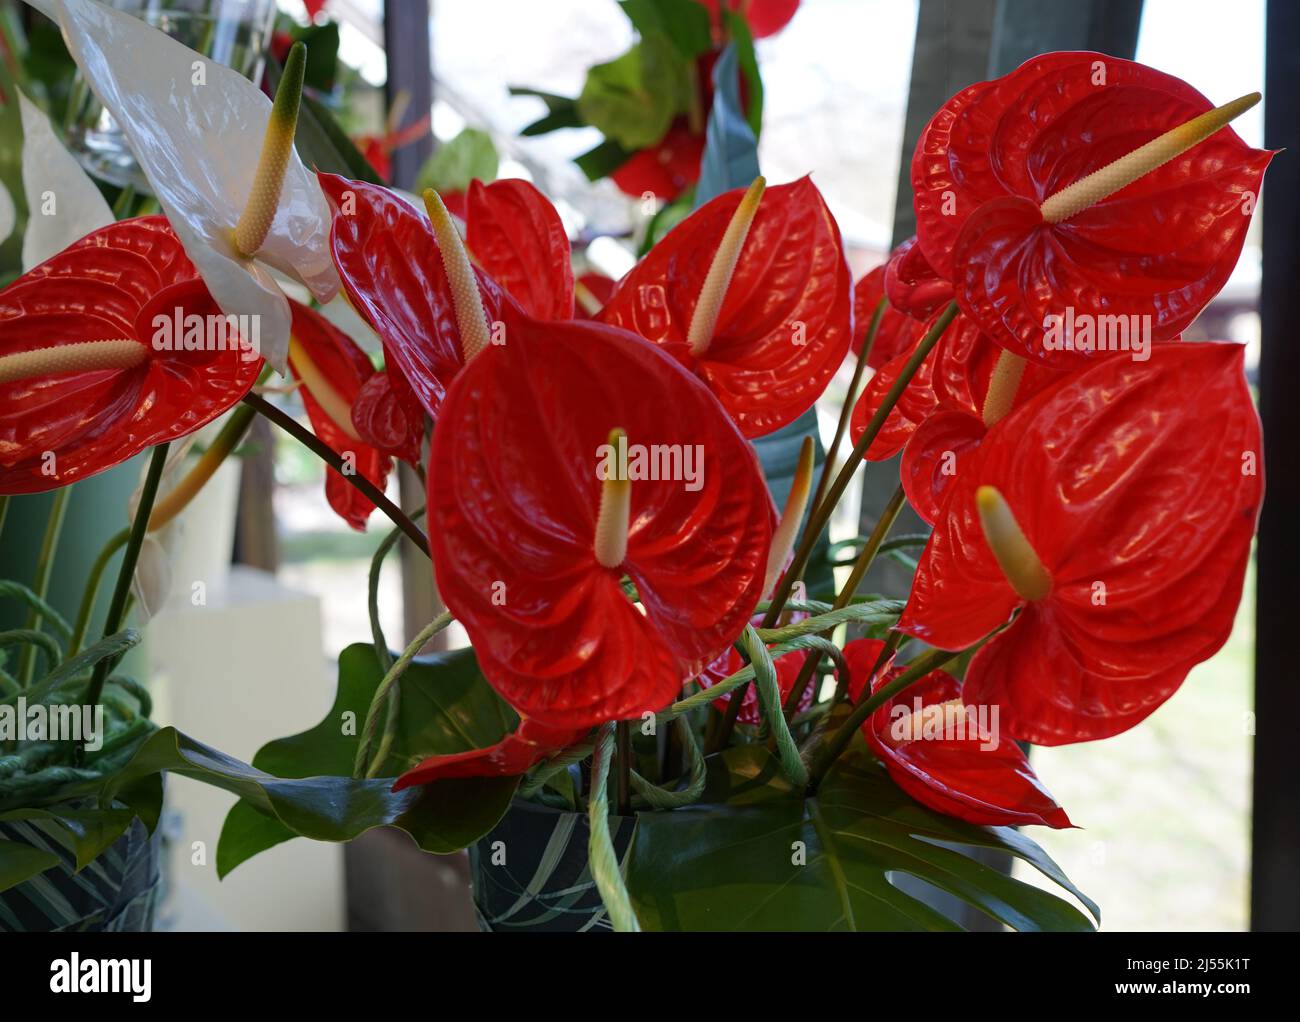 Roter Anthurium, Rückenblume oder Flamingo Blume. Anthurien sind die größte Gattung der Arumfamilie, Araceae. Stockfoto